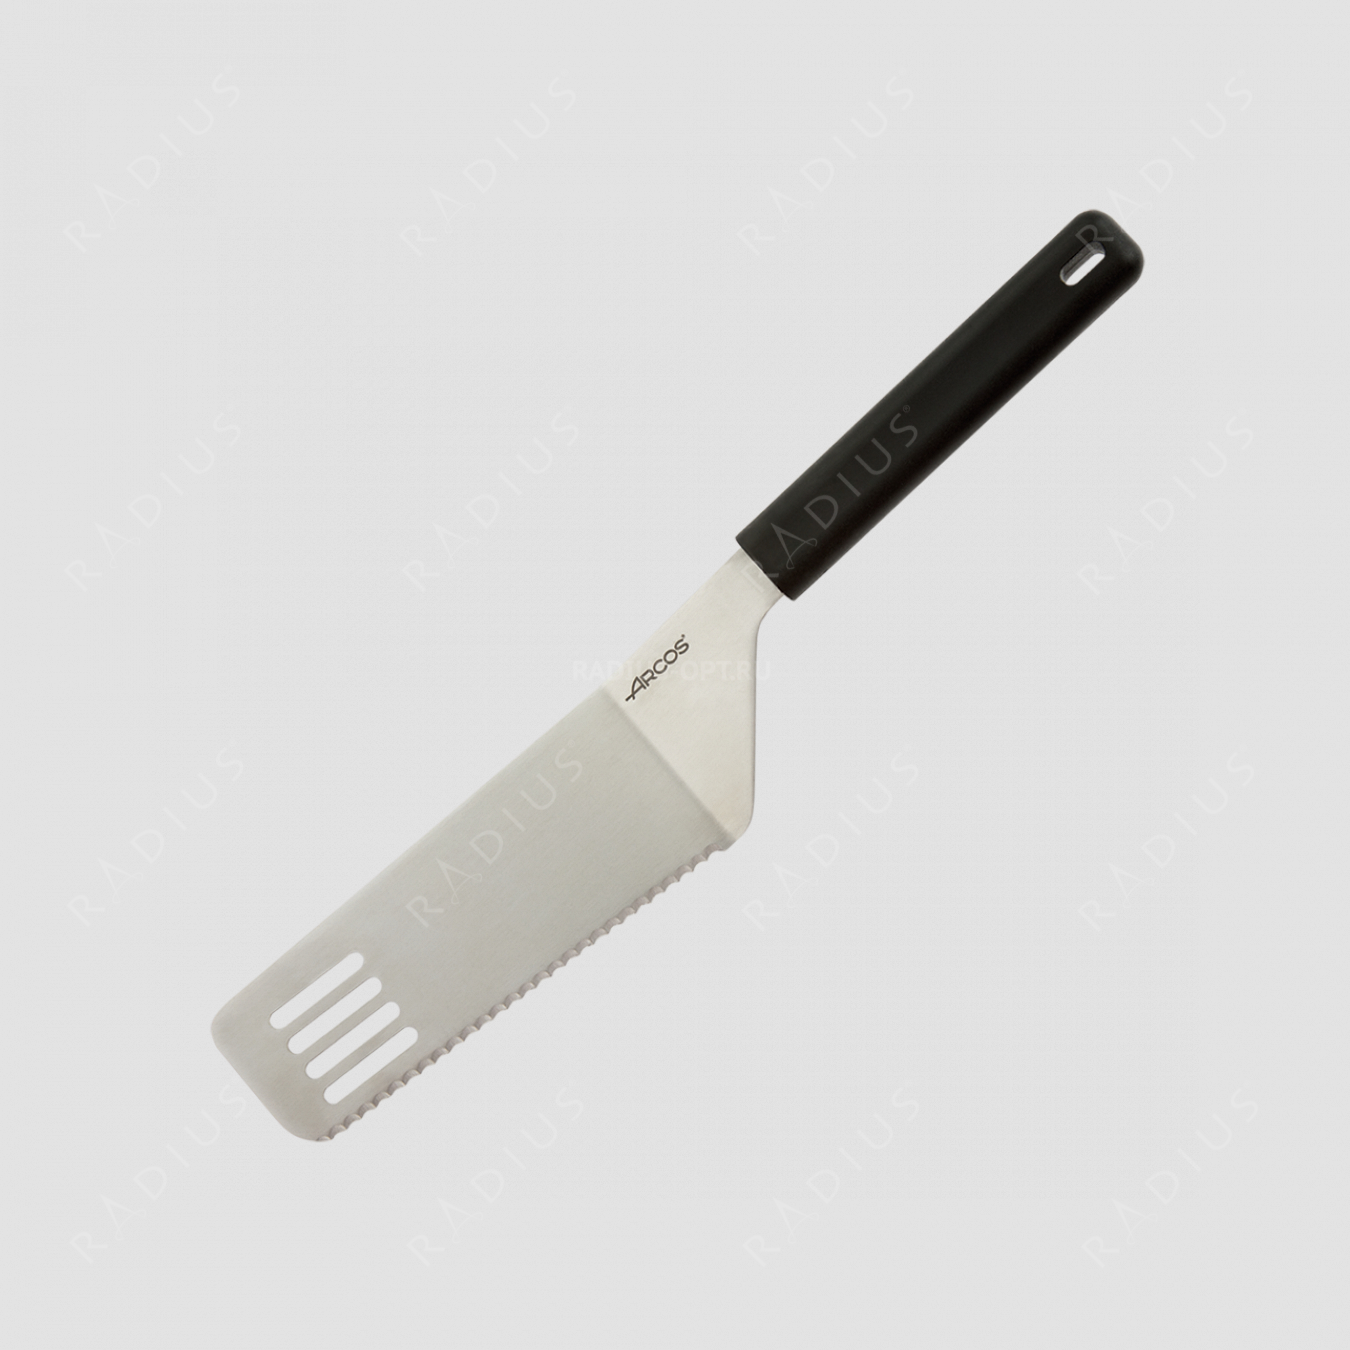 Лопатка -резак, L рабочей части 16 см, серия Kitchen gadgets, ARCOS, Испания